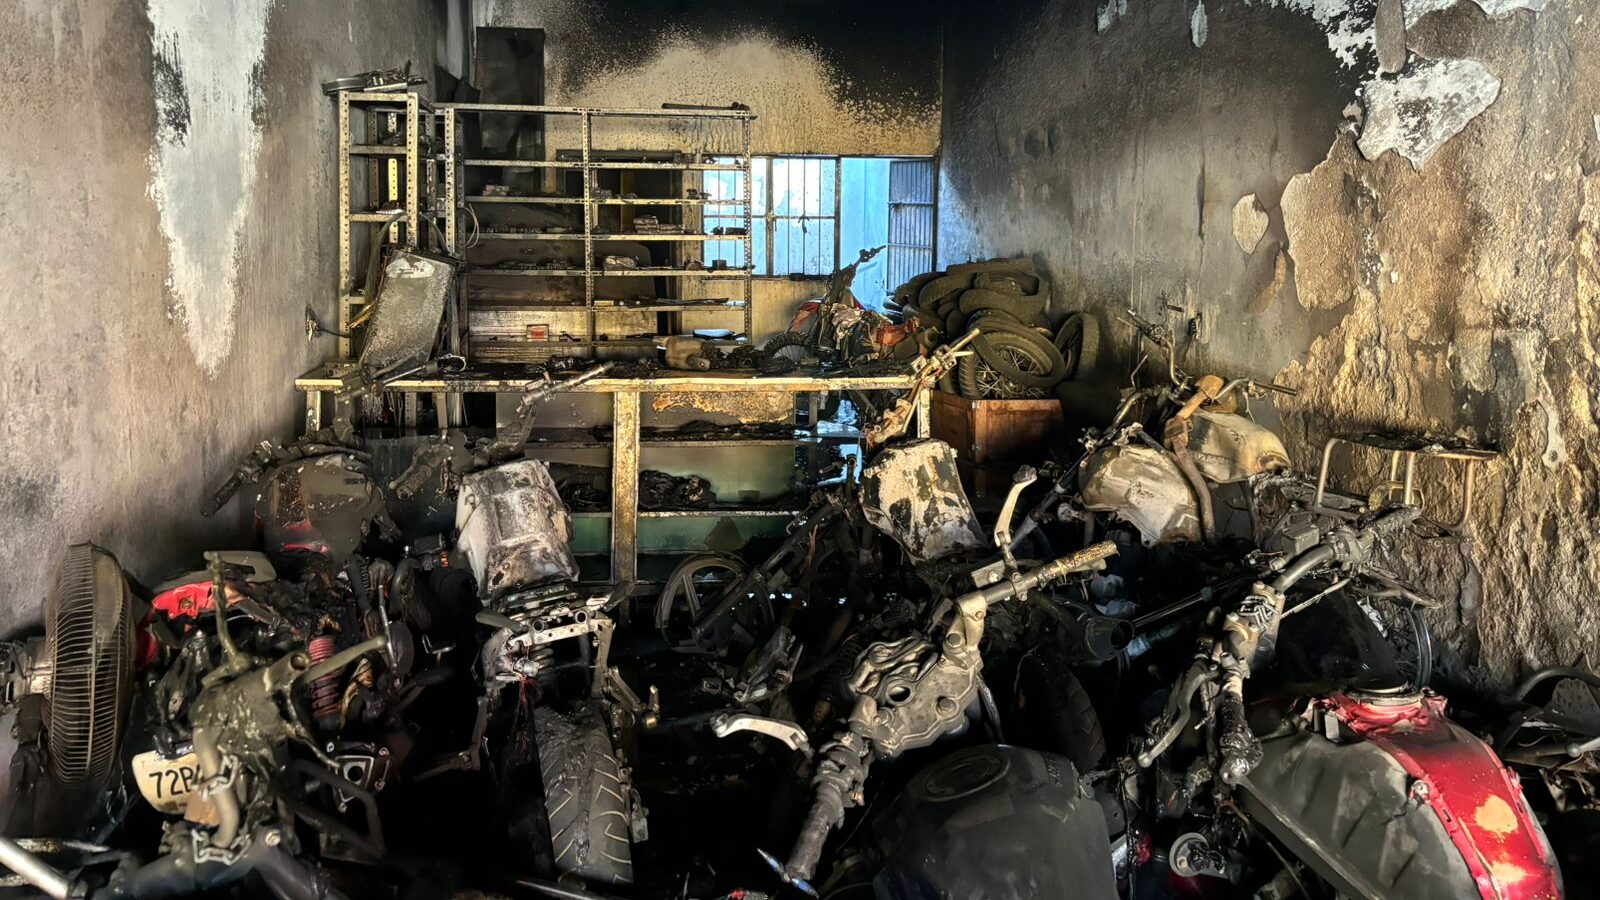 Incendio en taller consume 10 motocicletas